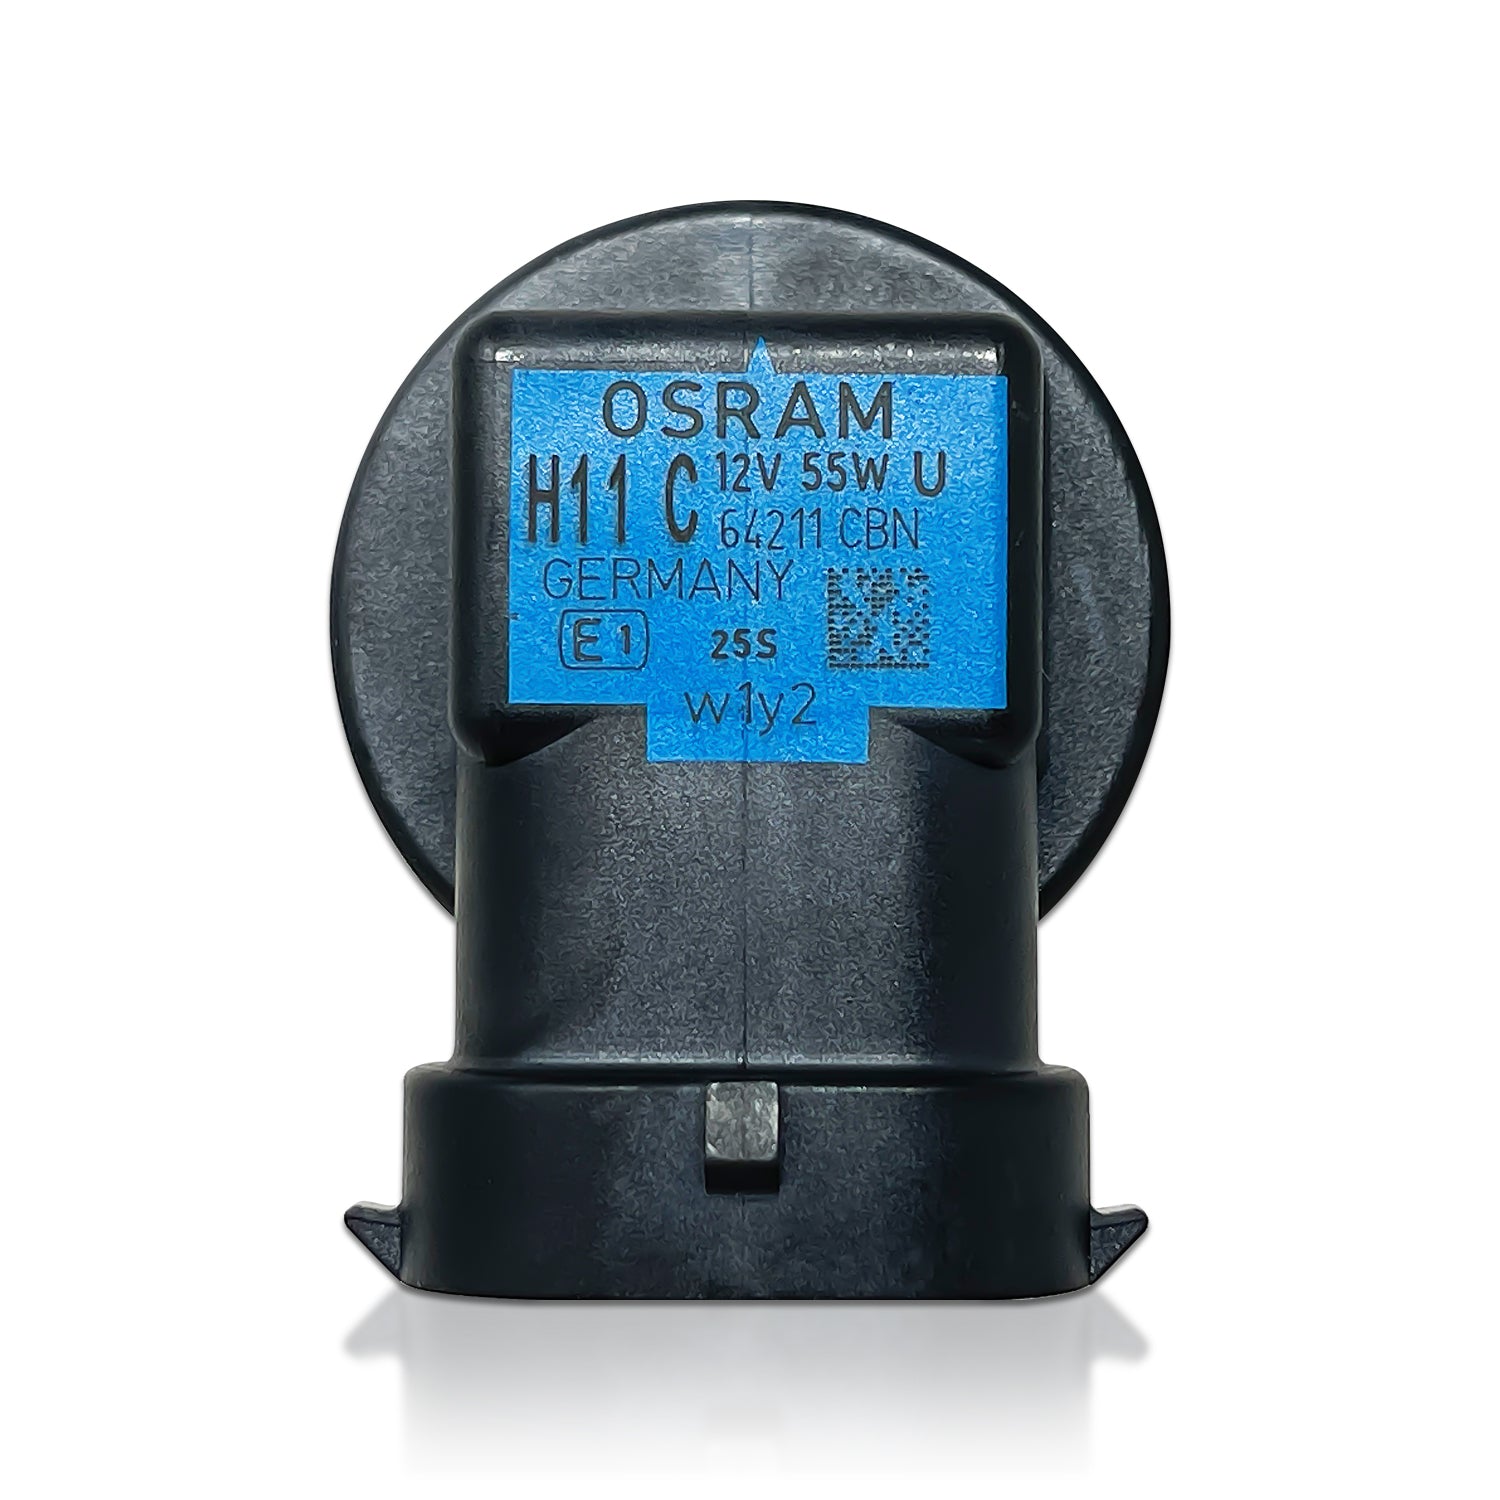 H11 - Osram 64211CBN Cool Blue Intense Next Gen Bulbs